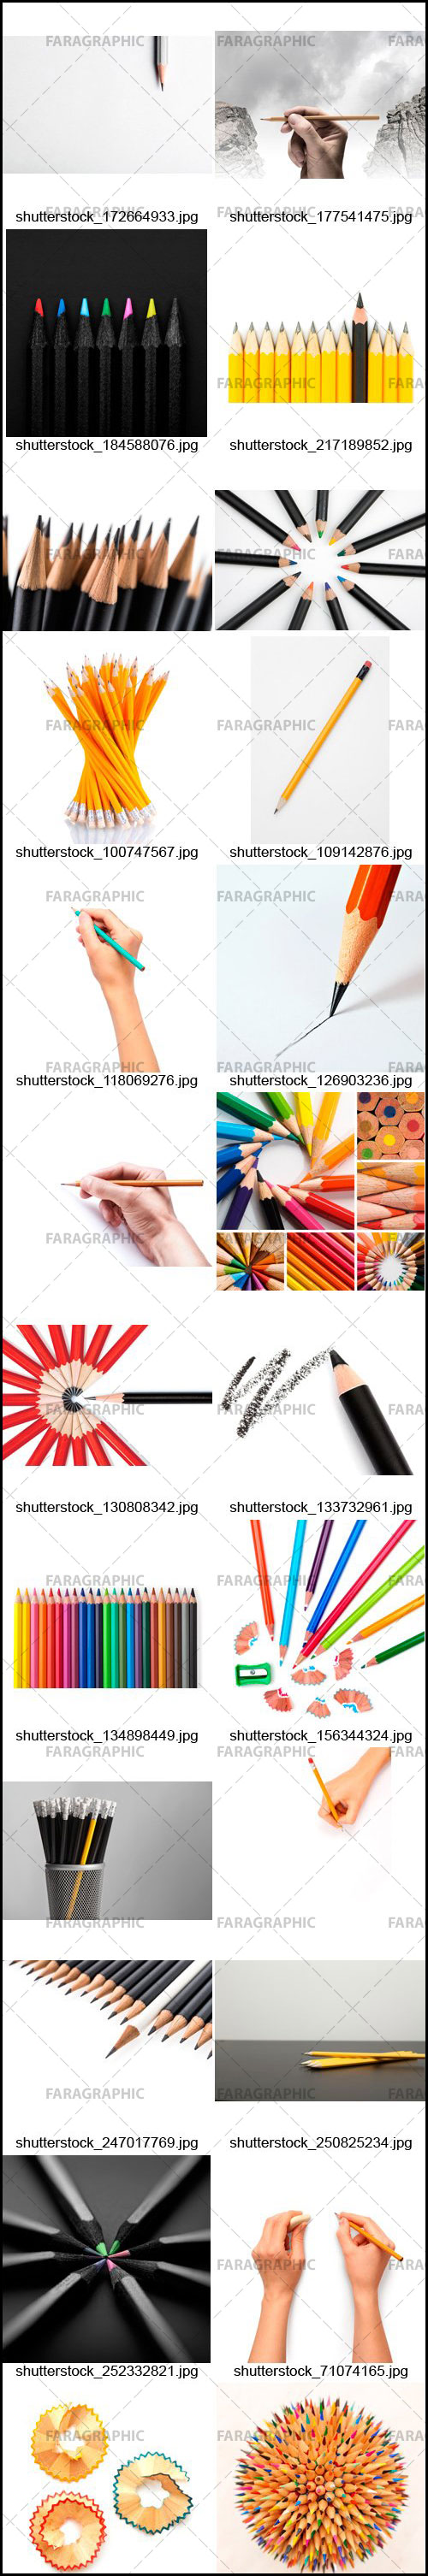 دانلود تصاویر استوک مداد - Pencils Stock